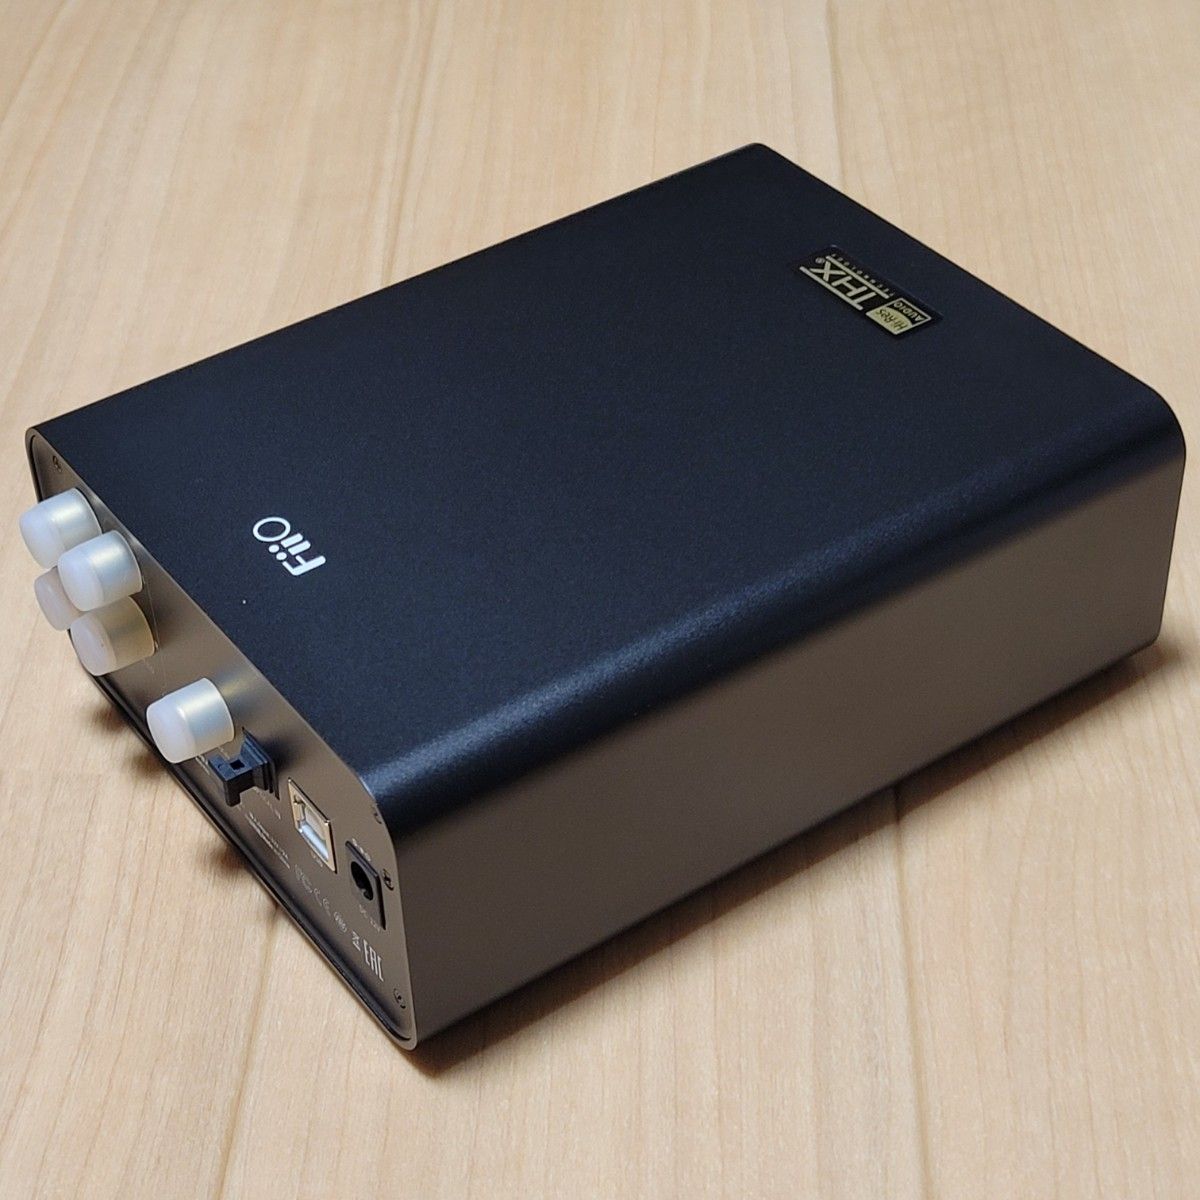 FiiO K7 USB DAC ヘッドホンアンプ